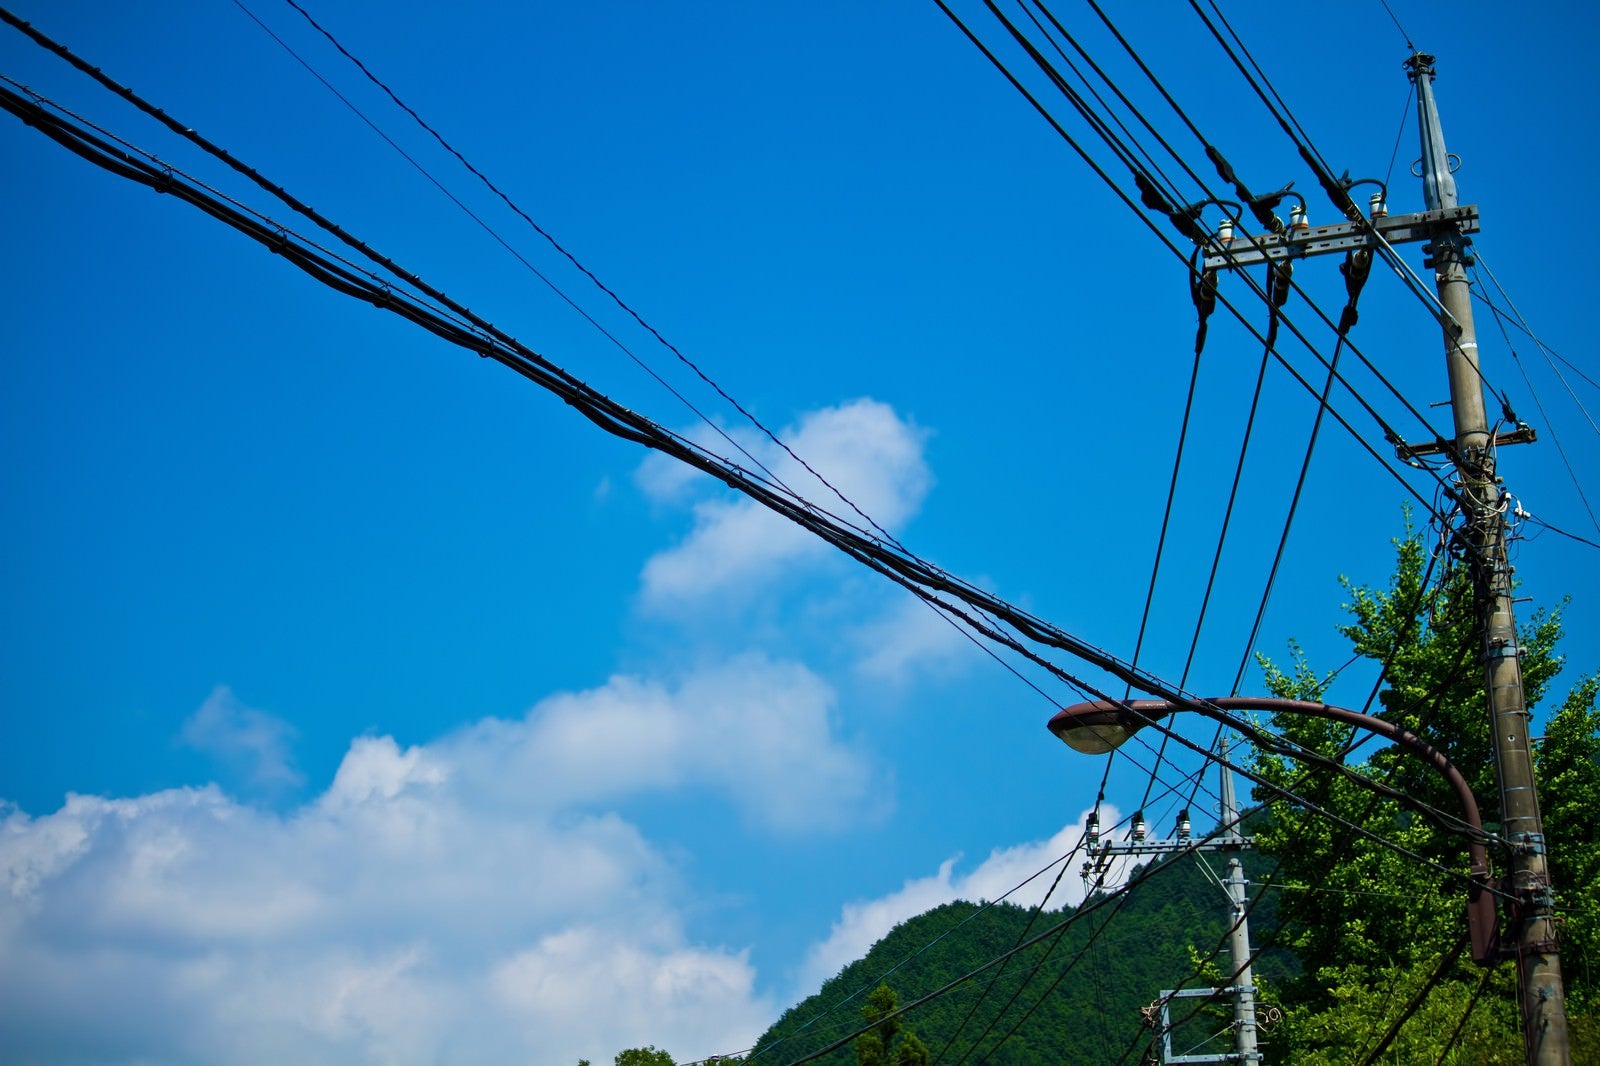 「真夏の青空と電柱・電線」の写真